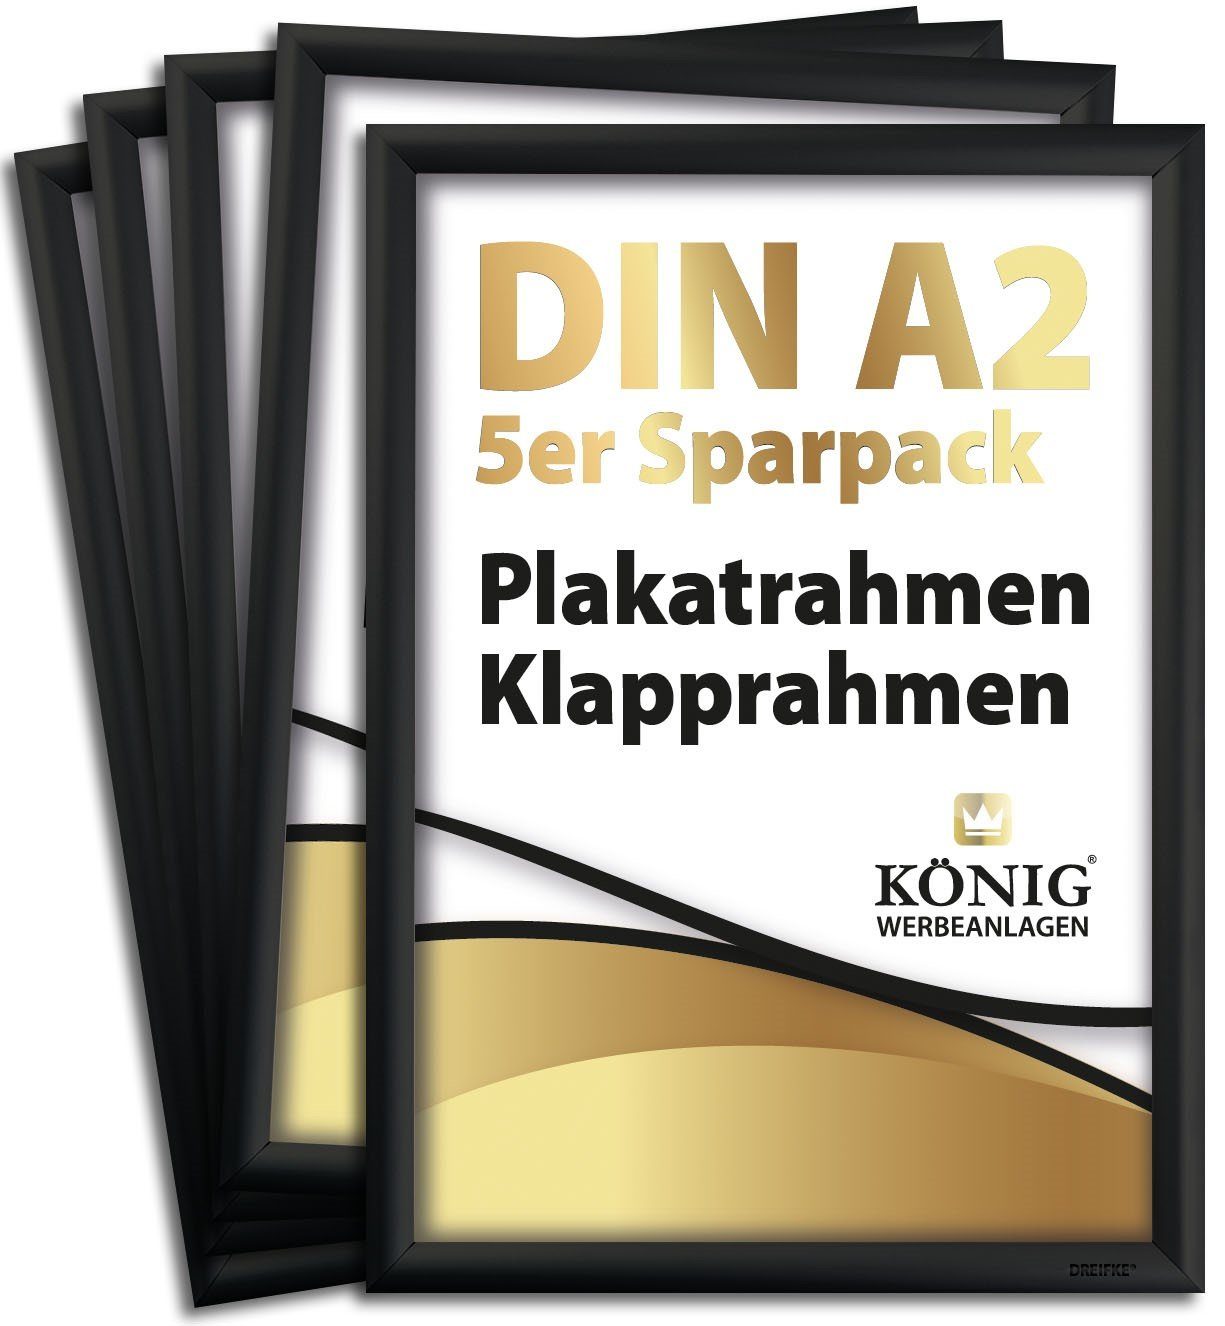 Dreifke Bilderrahmen 5 Plakatrahmen DIN A2, 25mm Aluminium Profil, schwarz, Klapprahmen, (Sparpack, 5 St), DIN A2, schlankes und leichtes Aluprofil, Klapprahmen